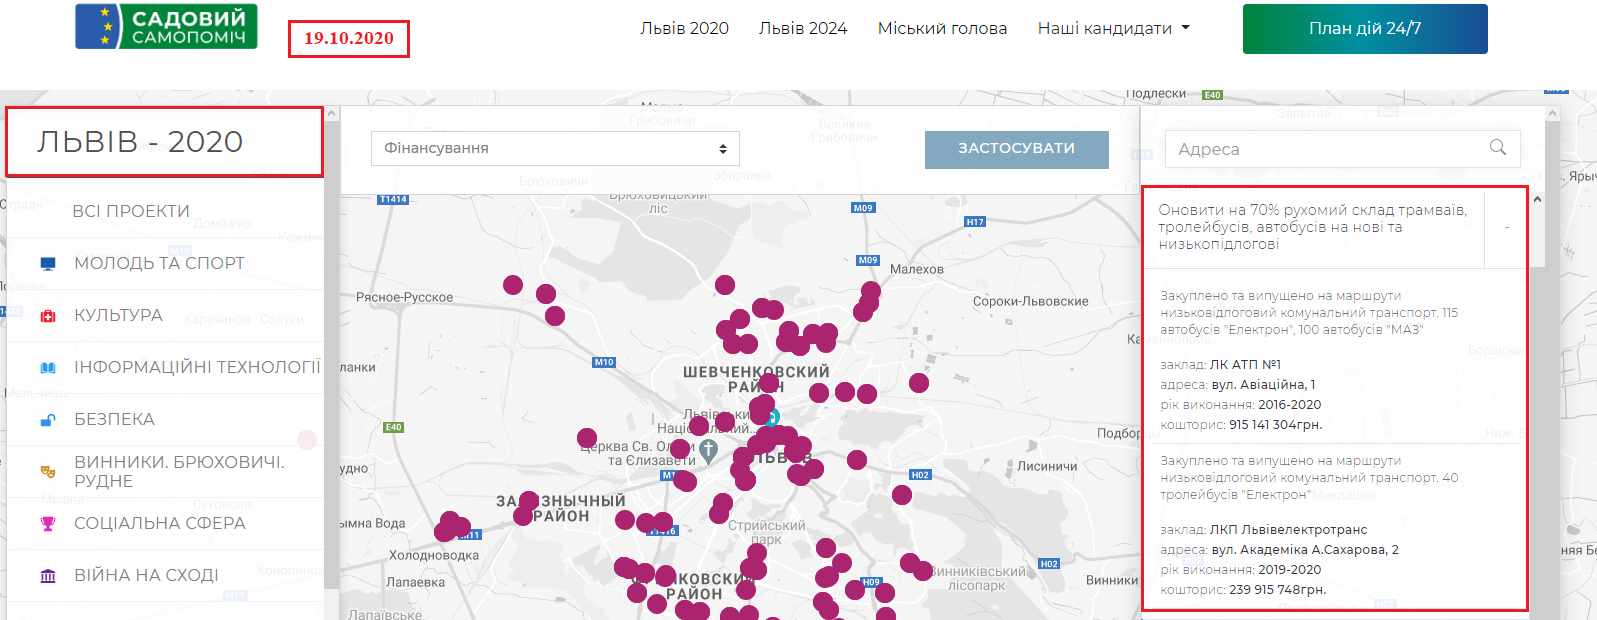 https://lviv2020.com.ua/map/2020/15